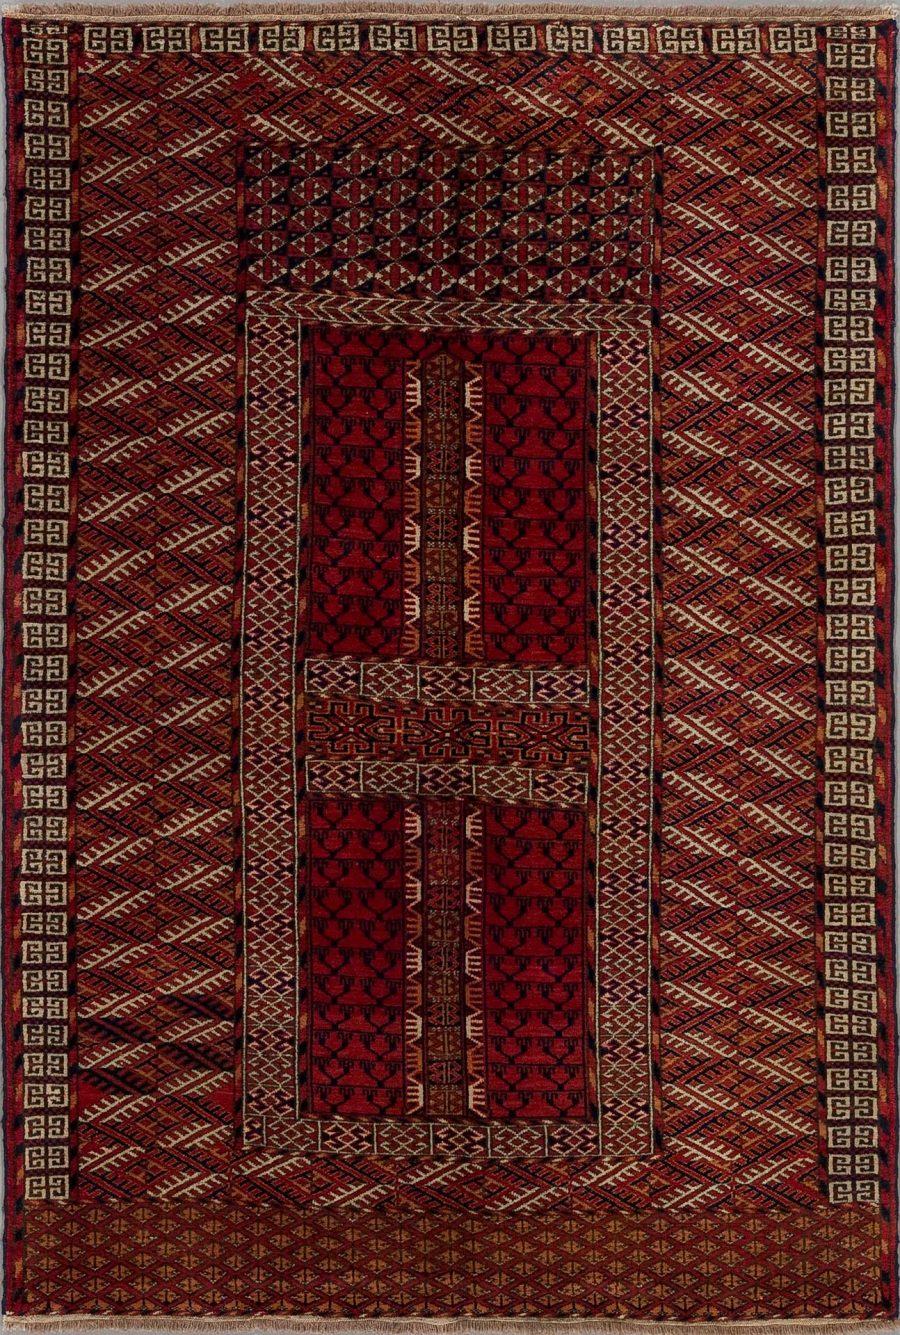 Traditioneller roter Teppich mit komplexem geometrischem Muster und zentralen Medaillons, umgeben von einem breiten dekorativen Rand.